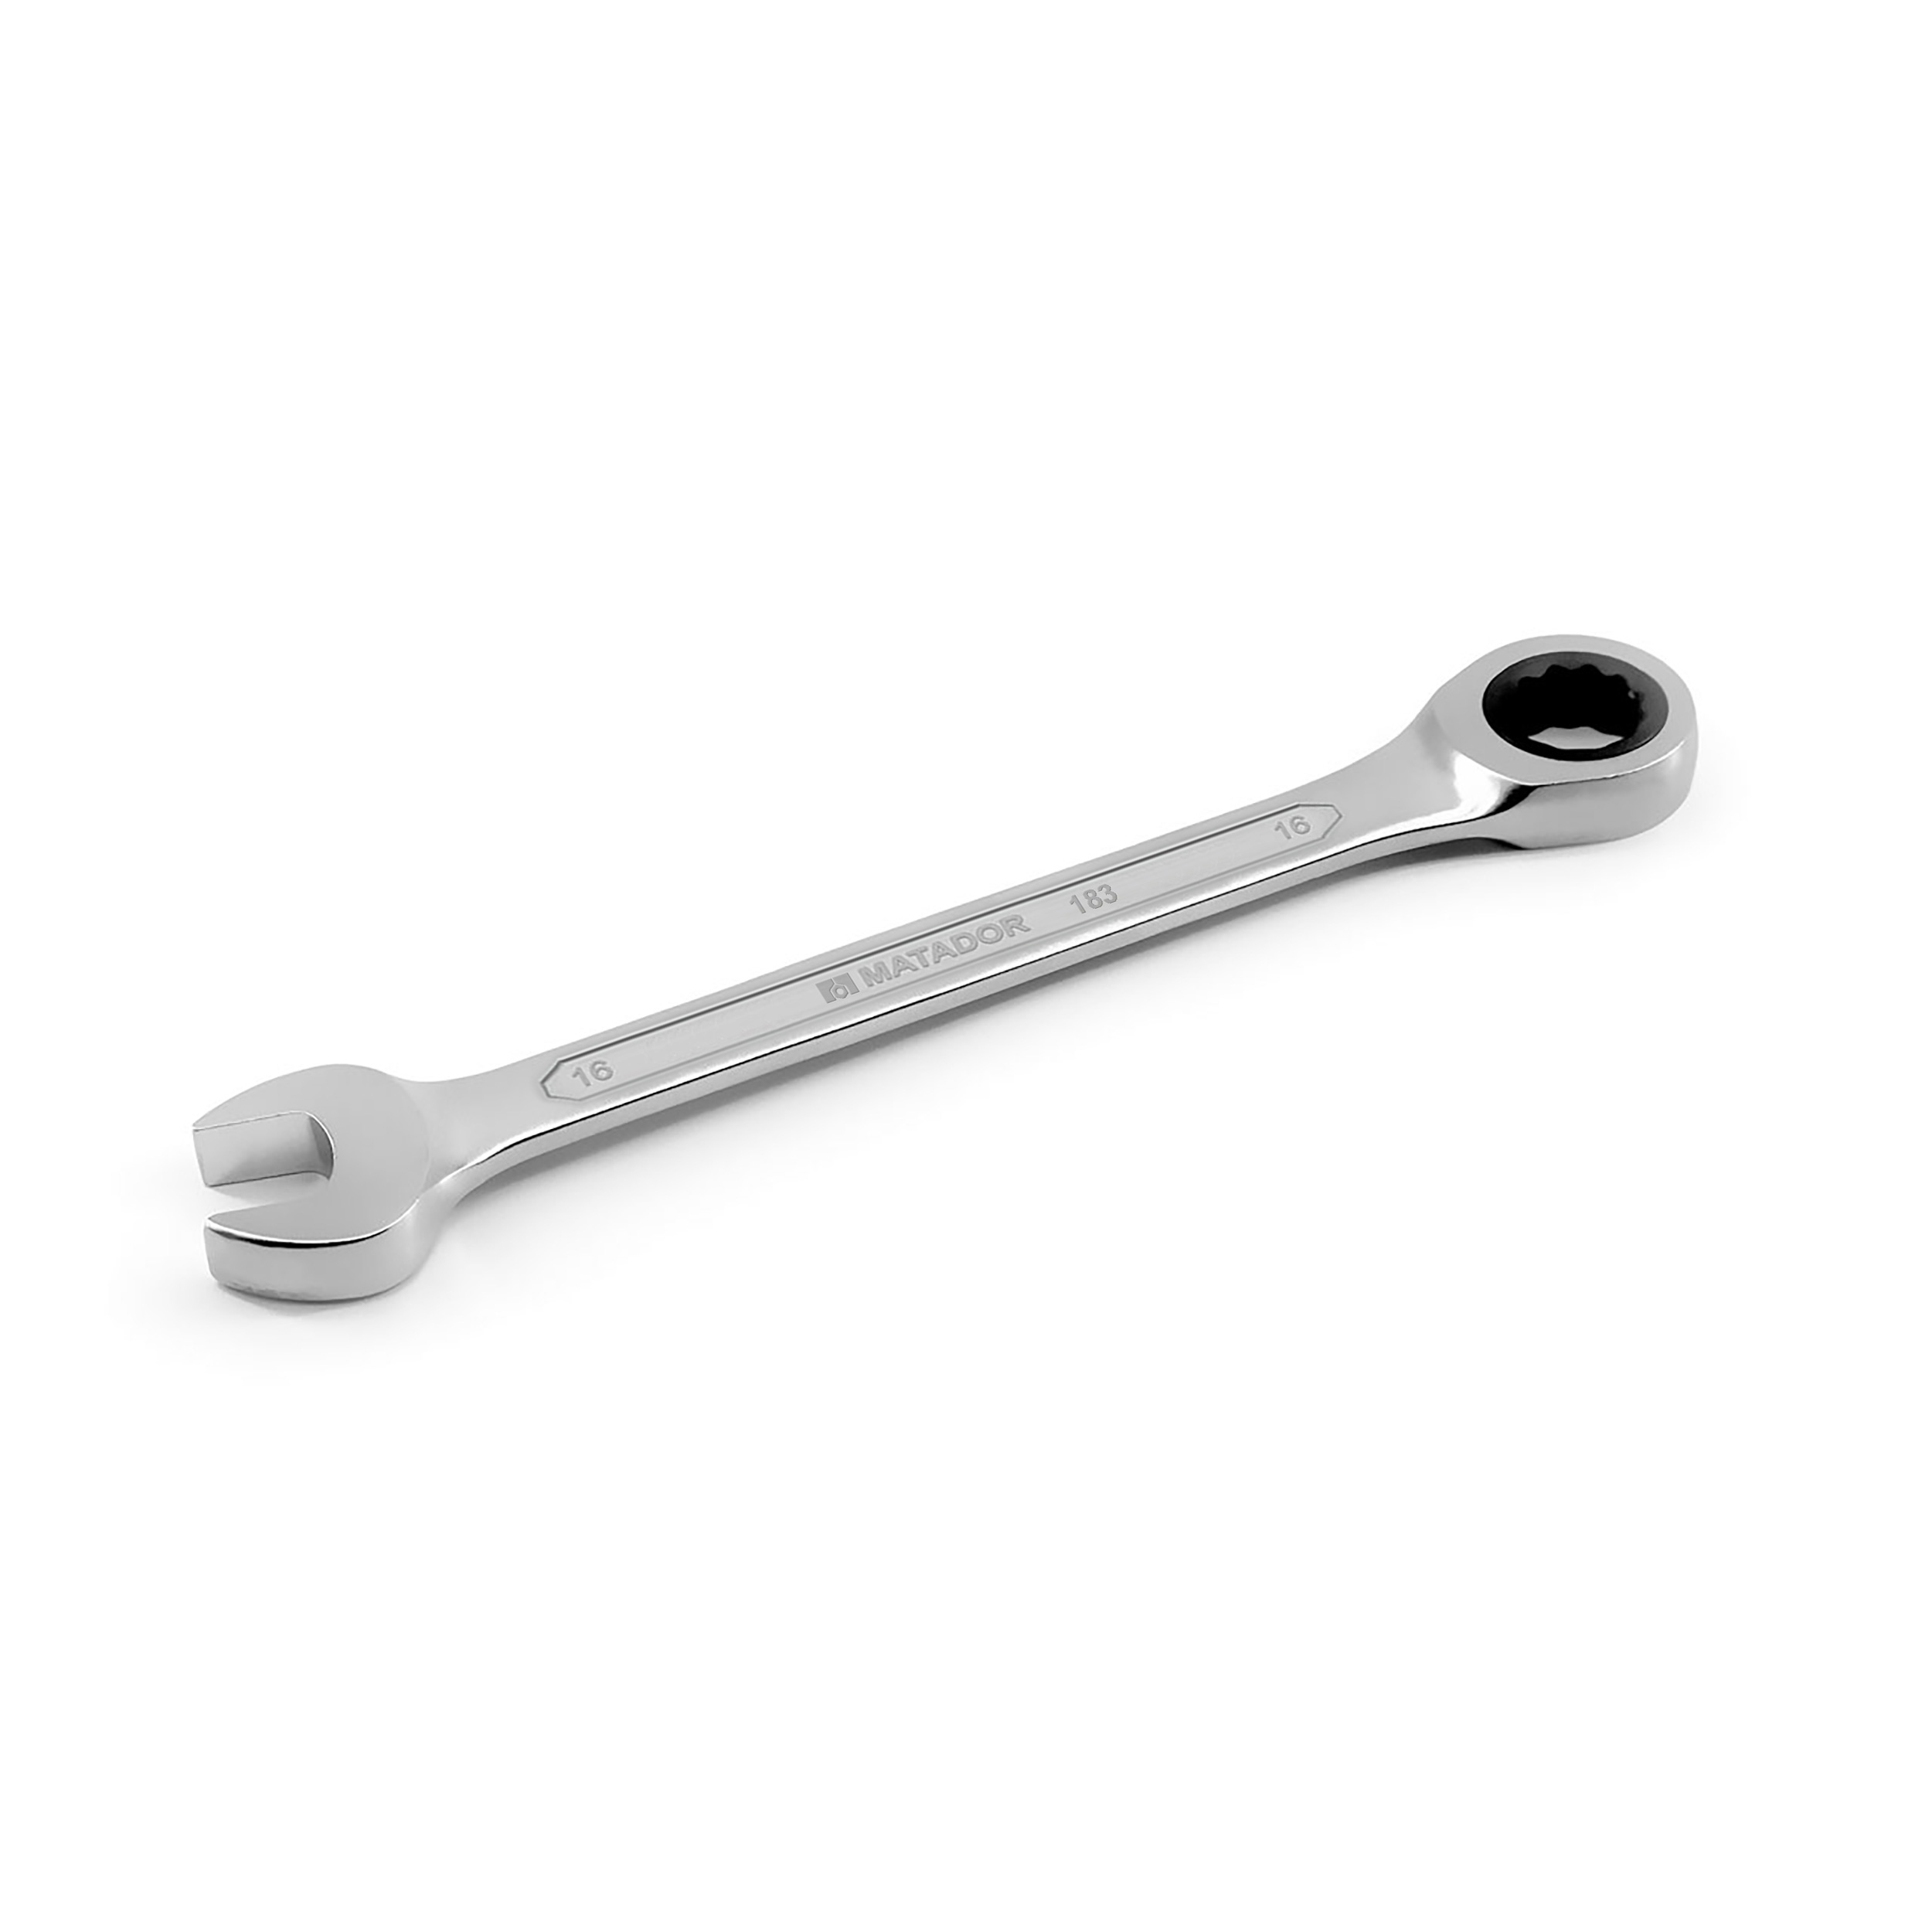 Knarren-Ringmaulschlüssel, 22 mm, 489 Nm, MATADOR Art.-Code: 01830220